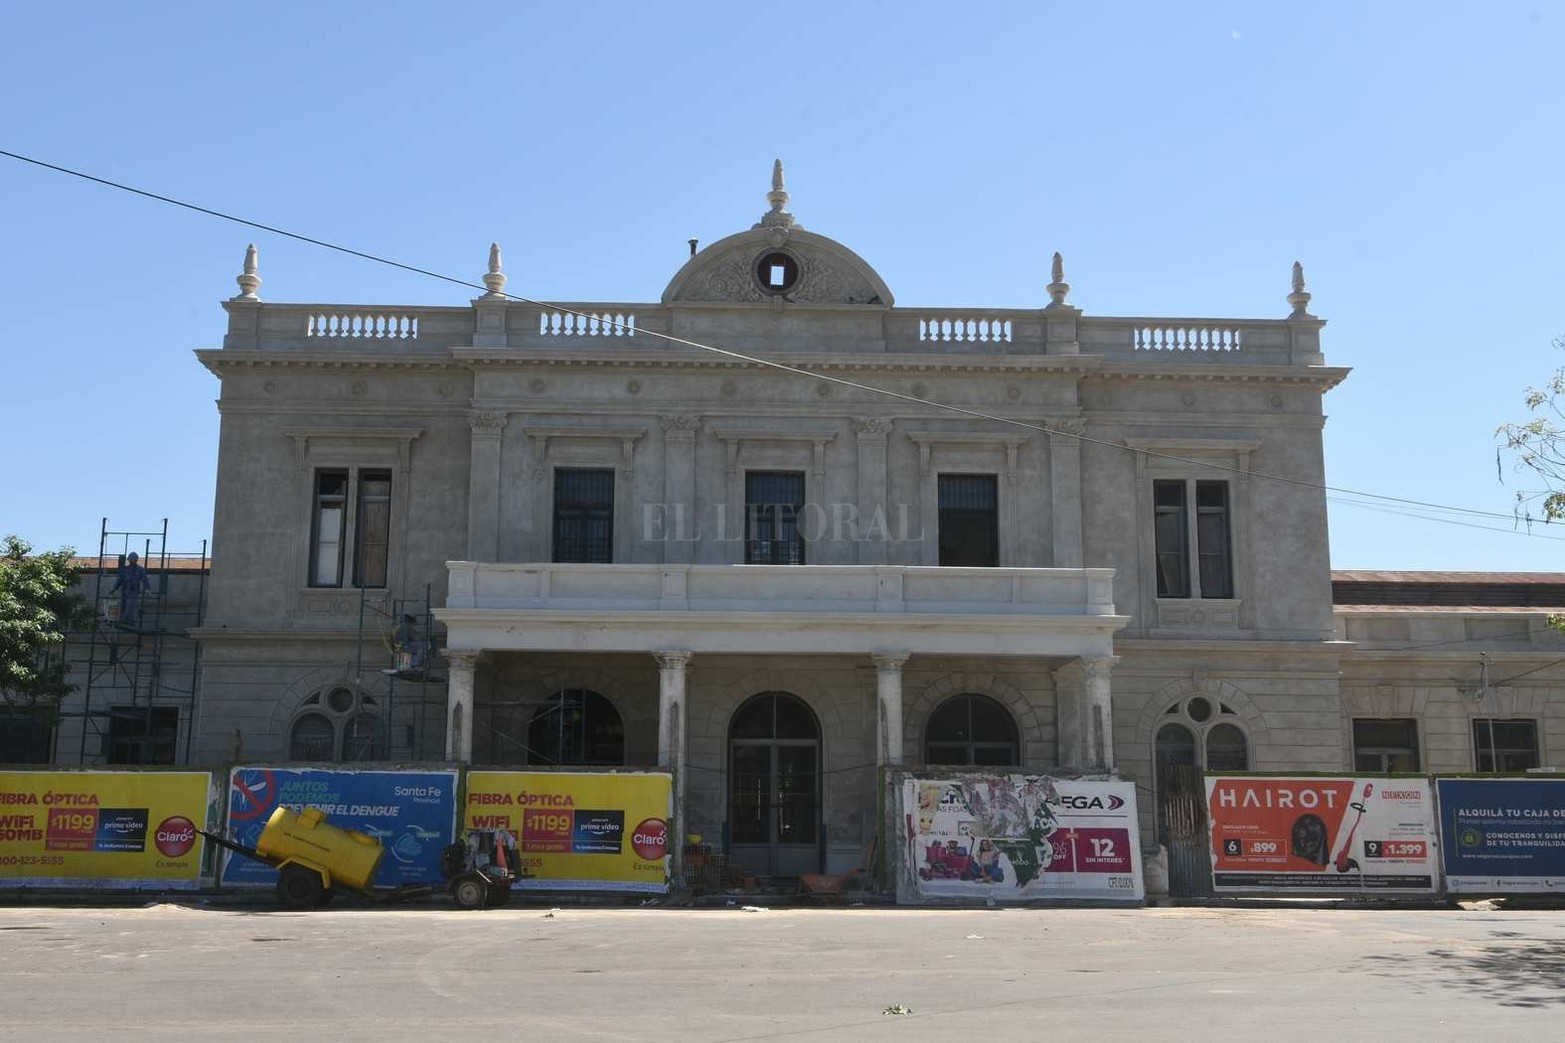 La estación de trenes Mitre, ubicada al sur de la ciudad, está siendo restaurada.